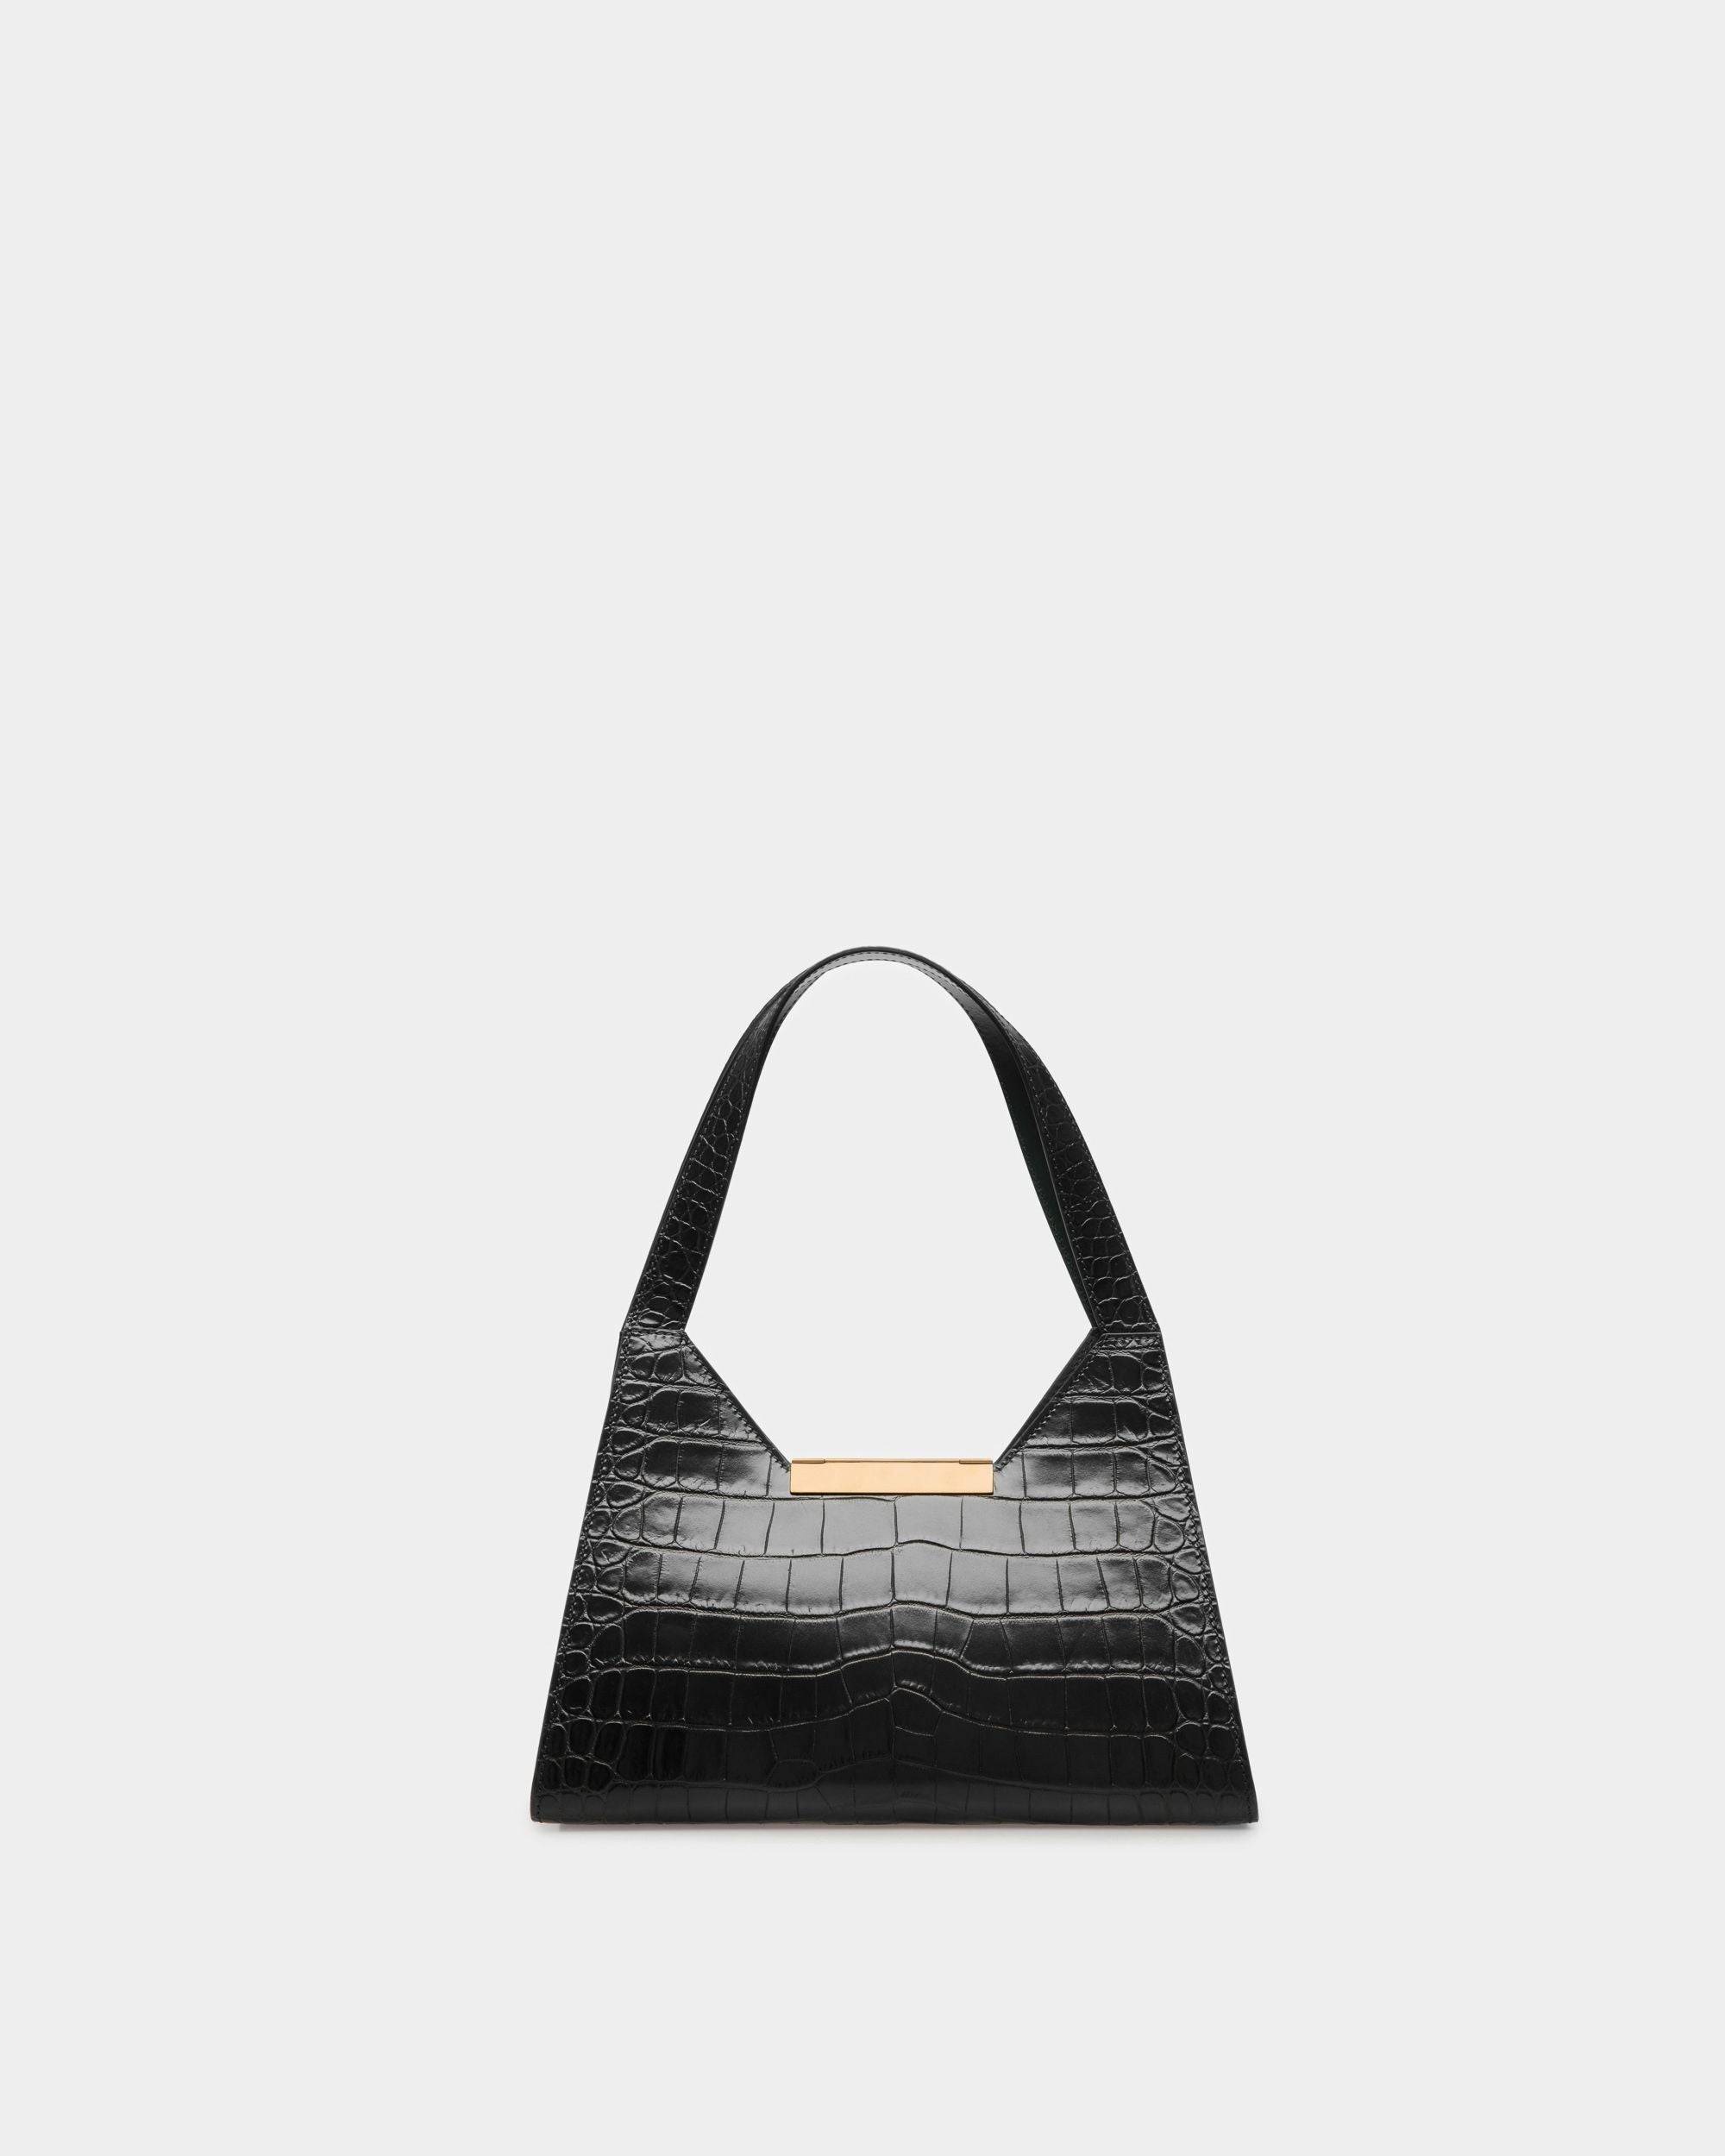 Trilliant Shoulder Bag | Women's Shoulder Bag | Black Leather | Bally | Still Life Back